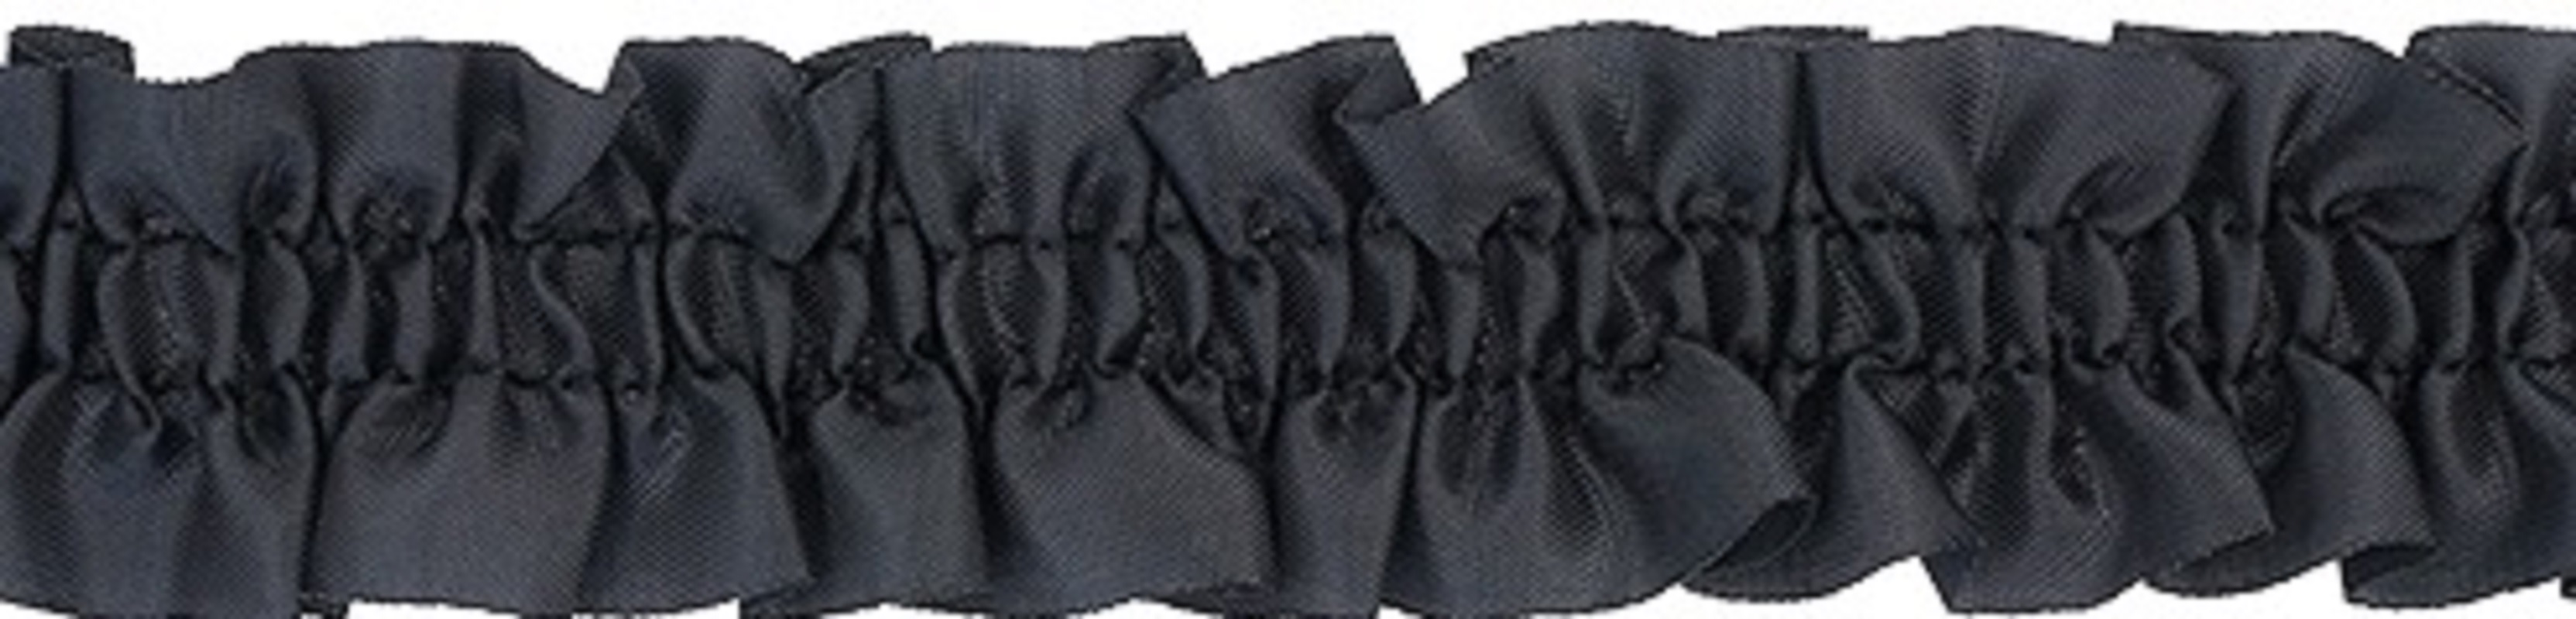 фото Резинка-рюш, цвет: черный, 28 мм x 25 м, арт. 28730 китай